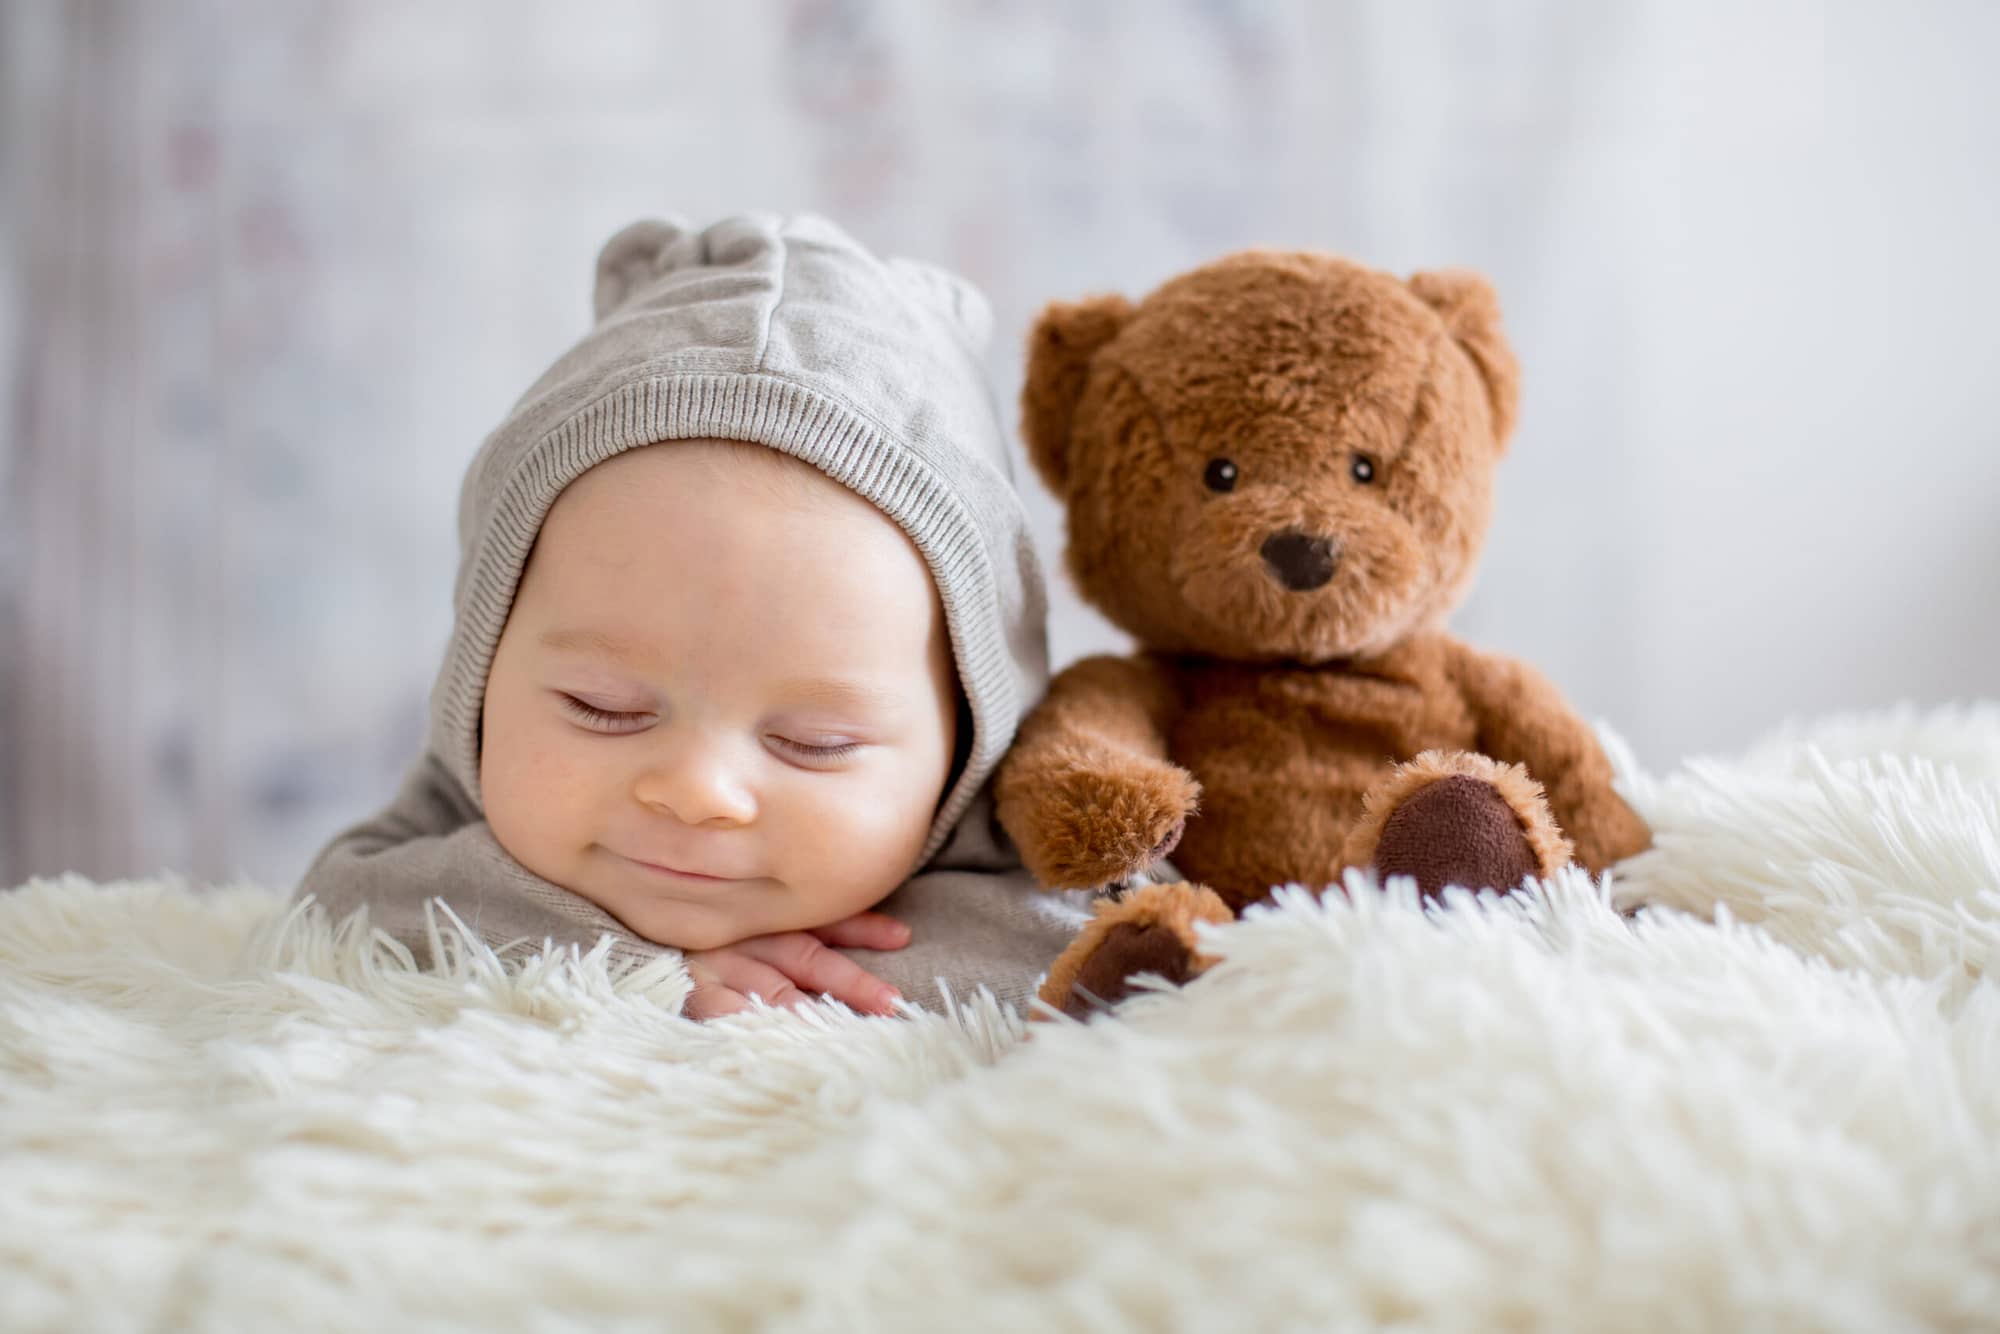 Somnul bebelușului: totul pentru siguranța lui